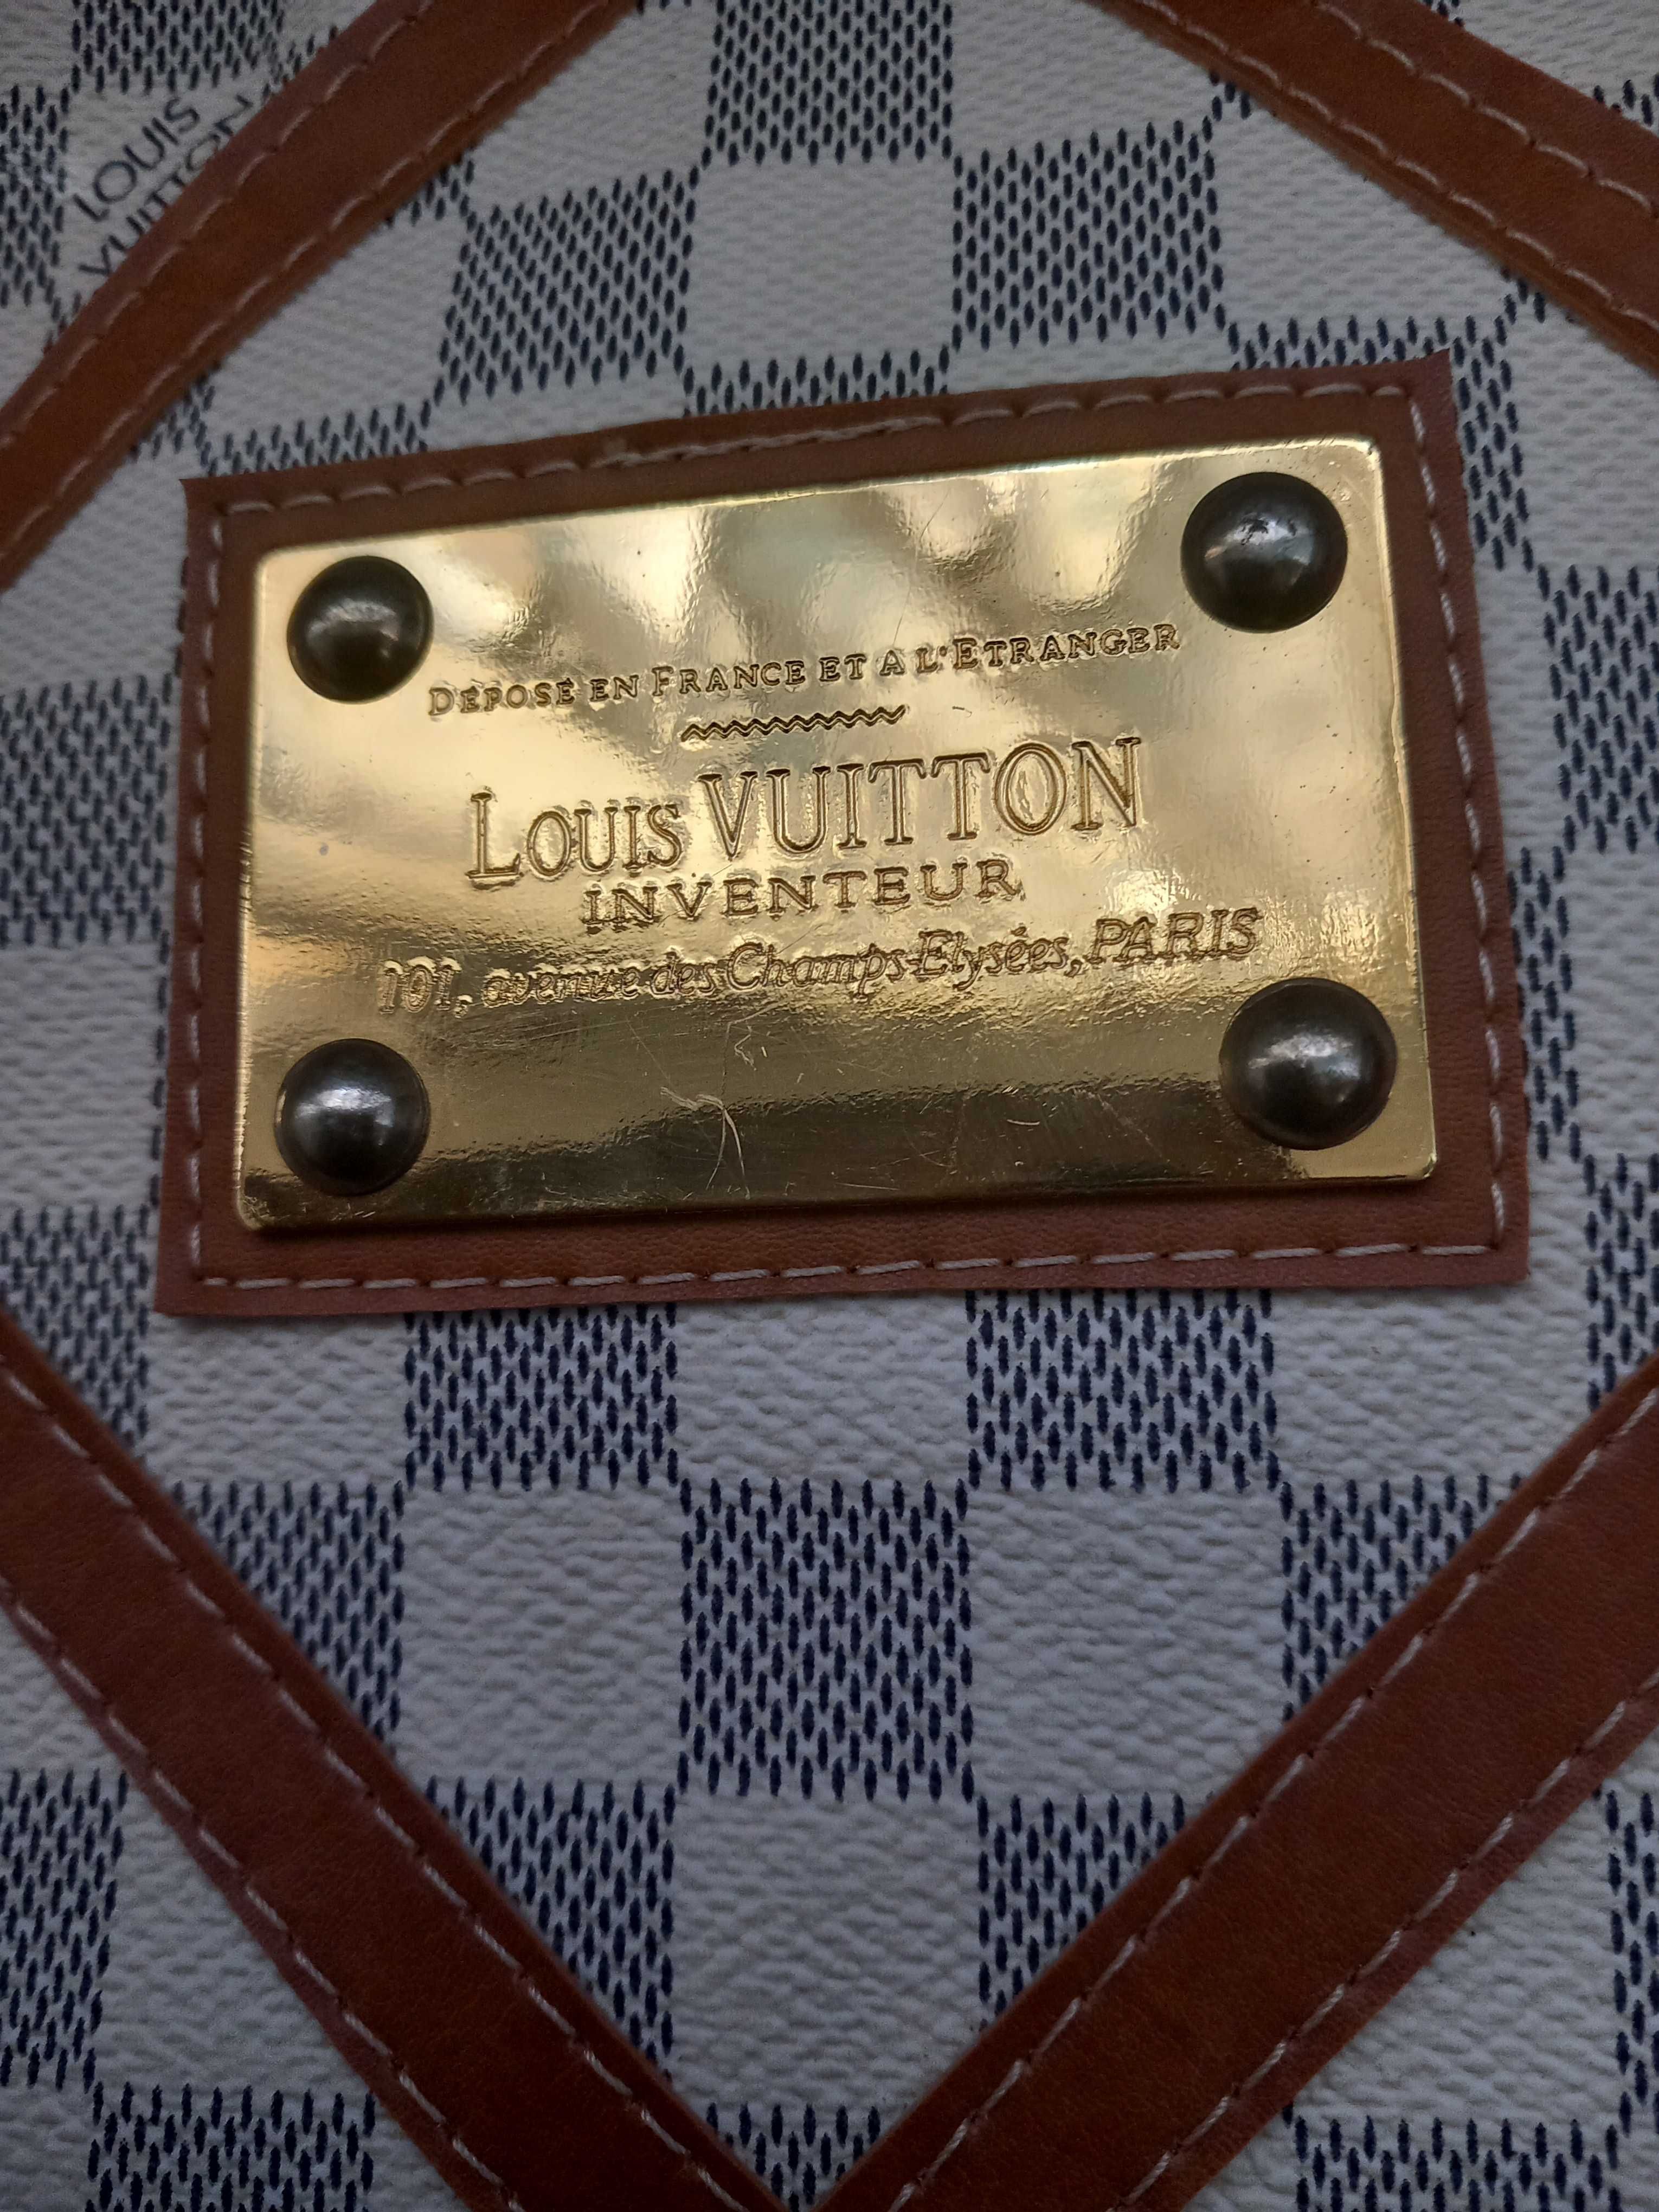 Torebka Louis Vuitton